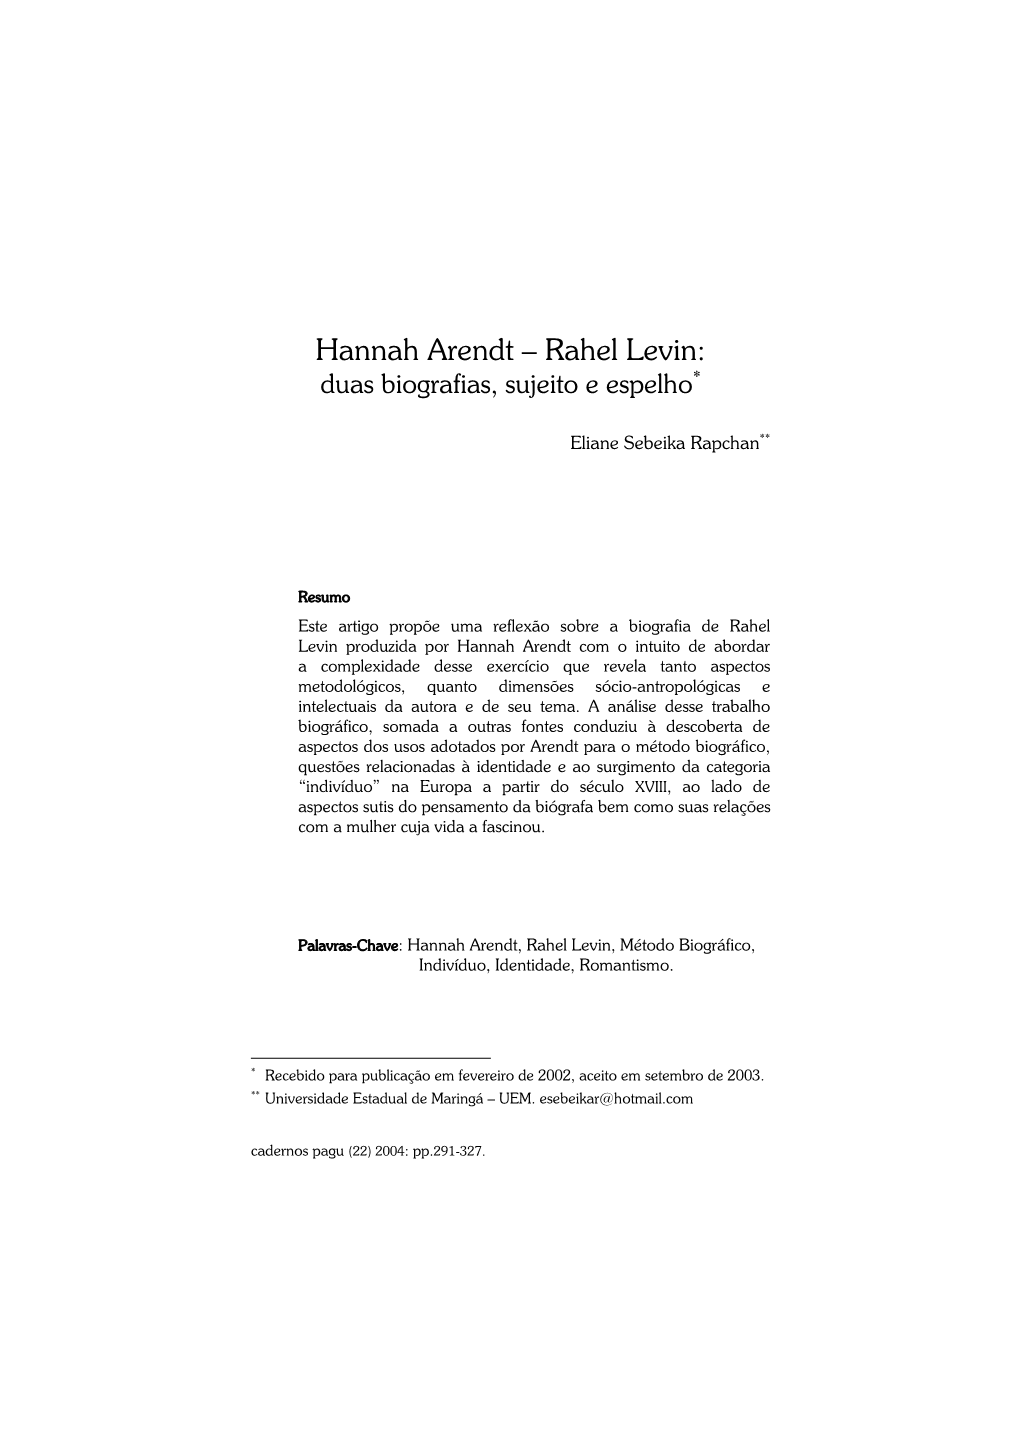 Hannah Arendt – Rahel Levin: Duas Biografias, Sujeito E Espelho*